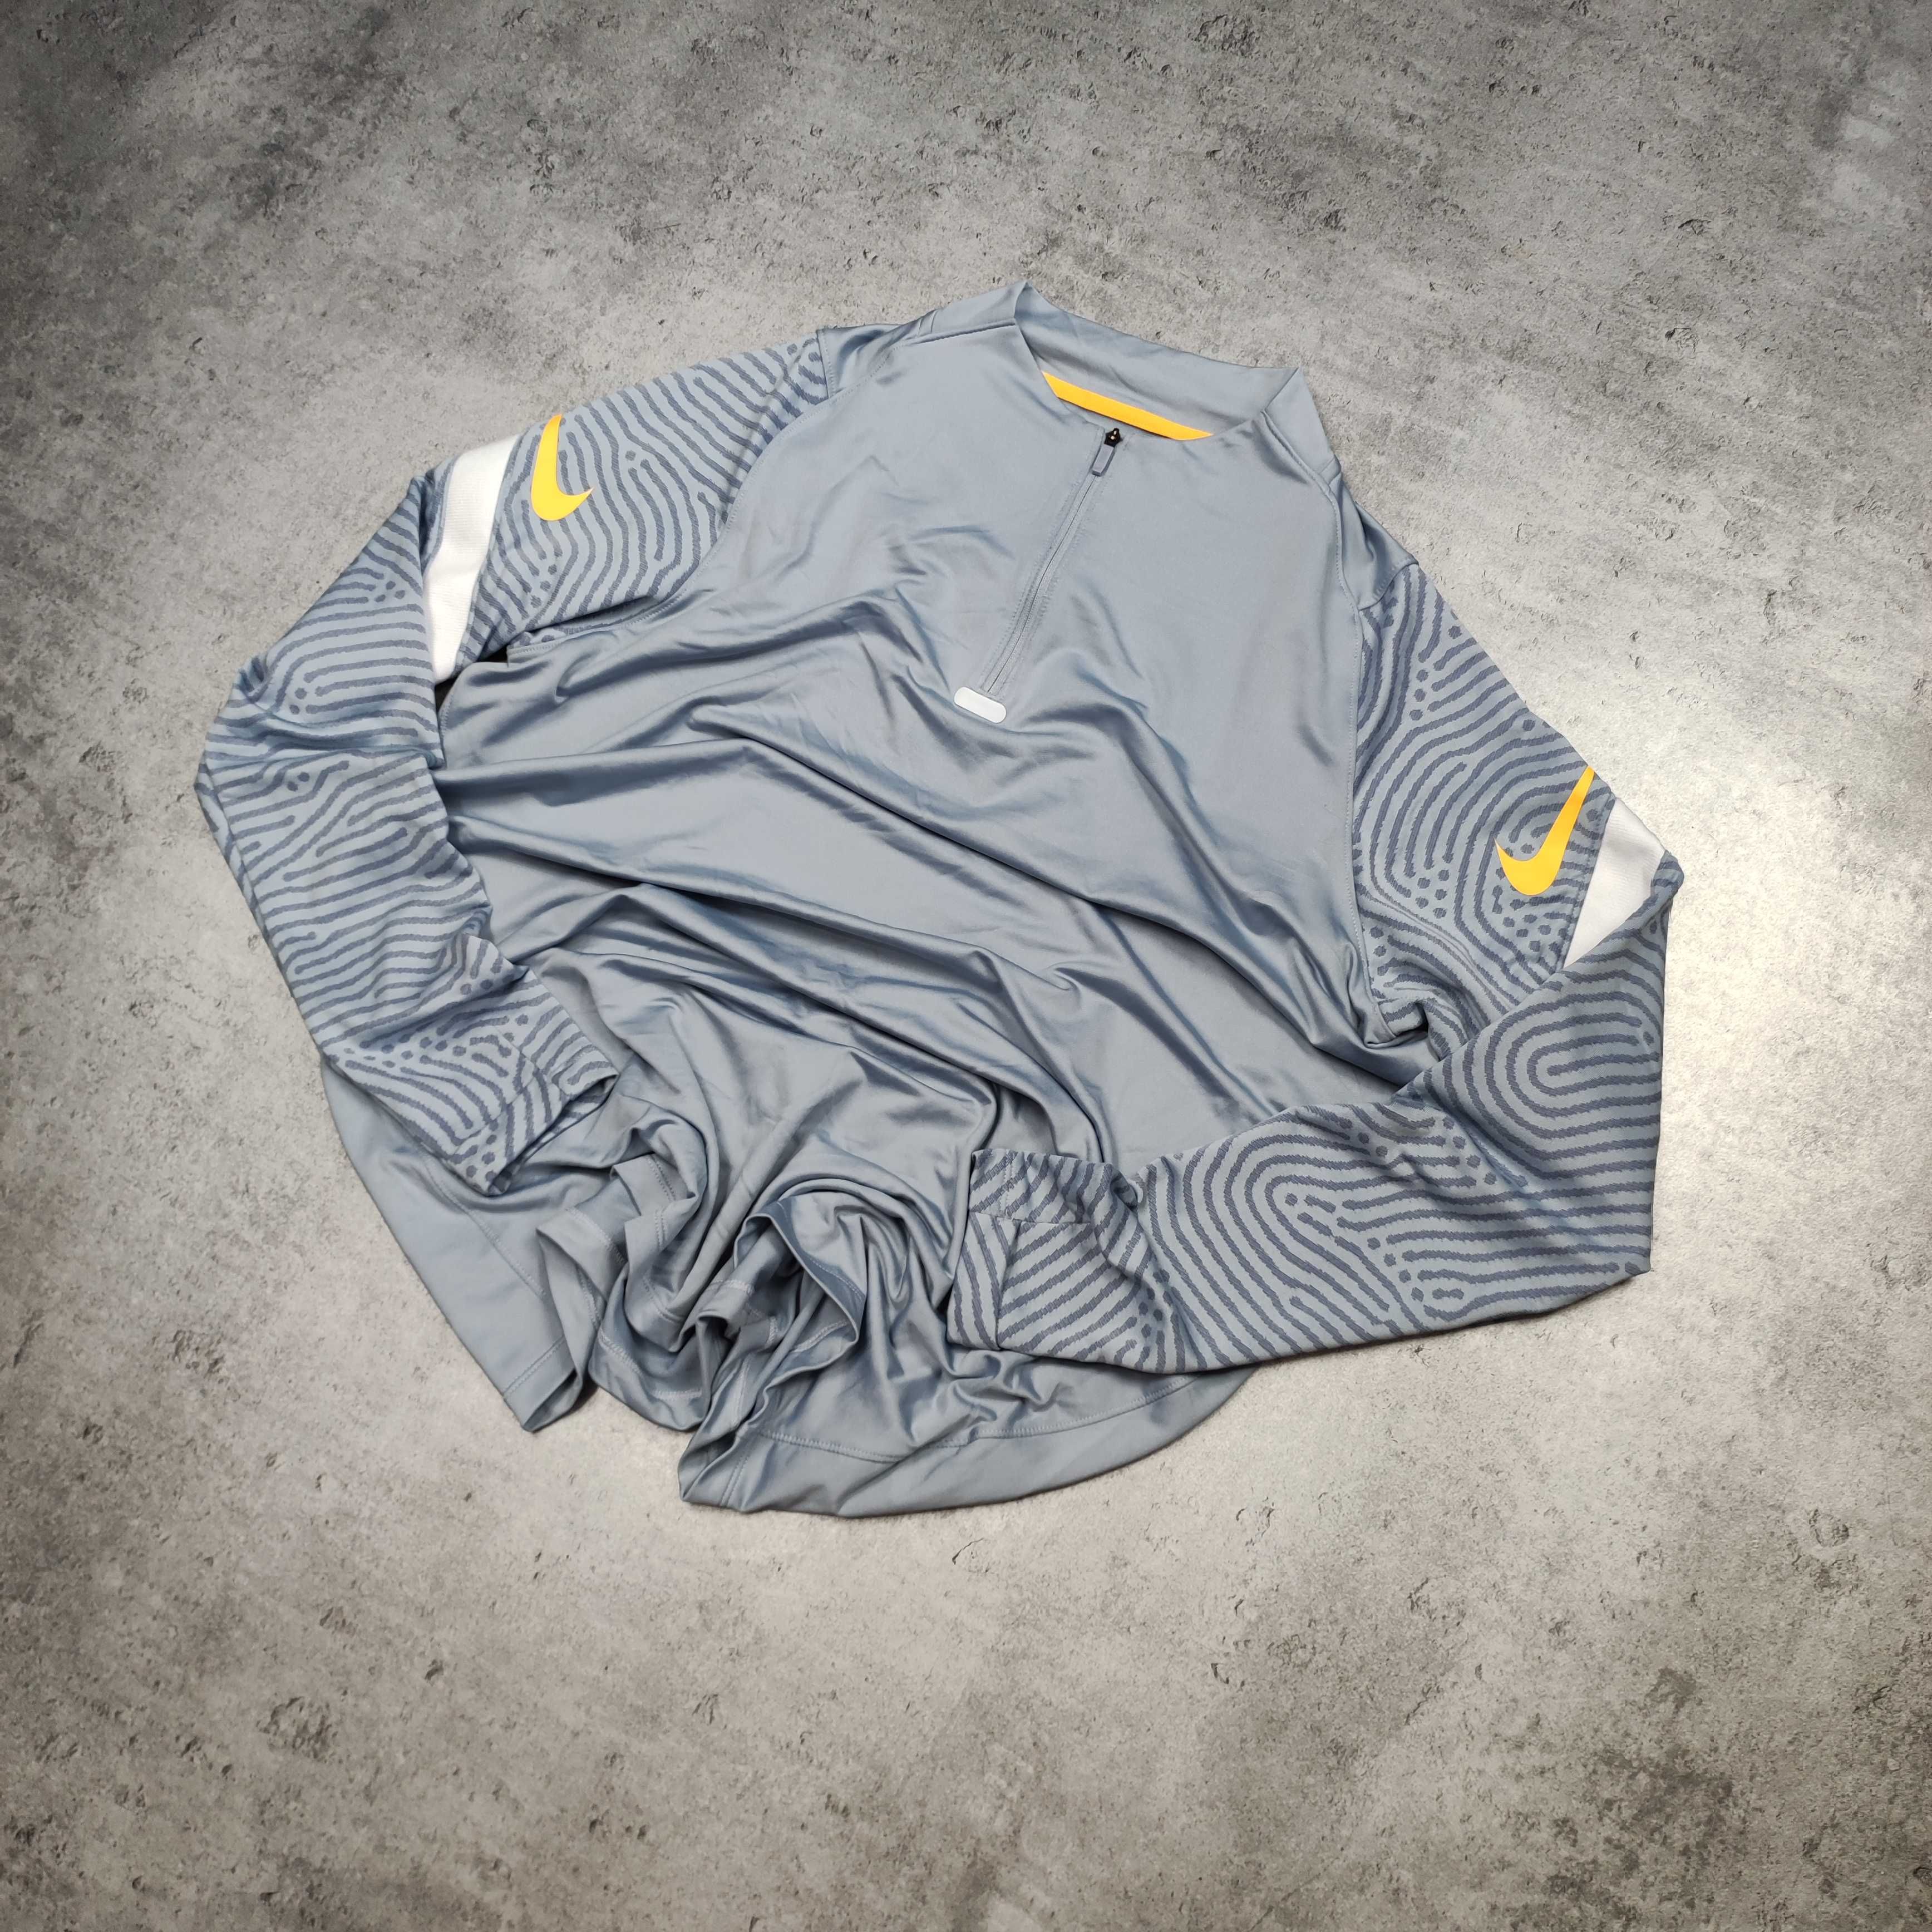 MĘSKA Bluza Śliska Sportowa siłownia Bieg Nike Rozpinana Błękitna Logo